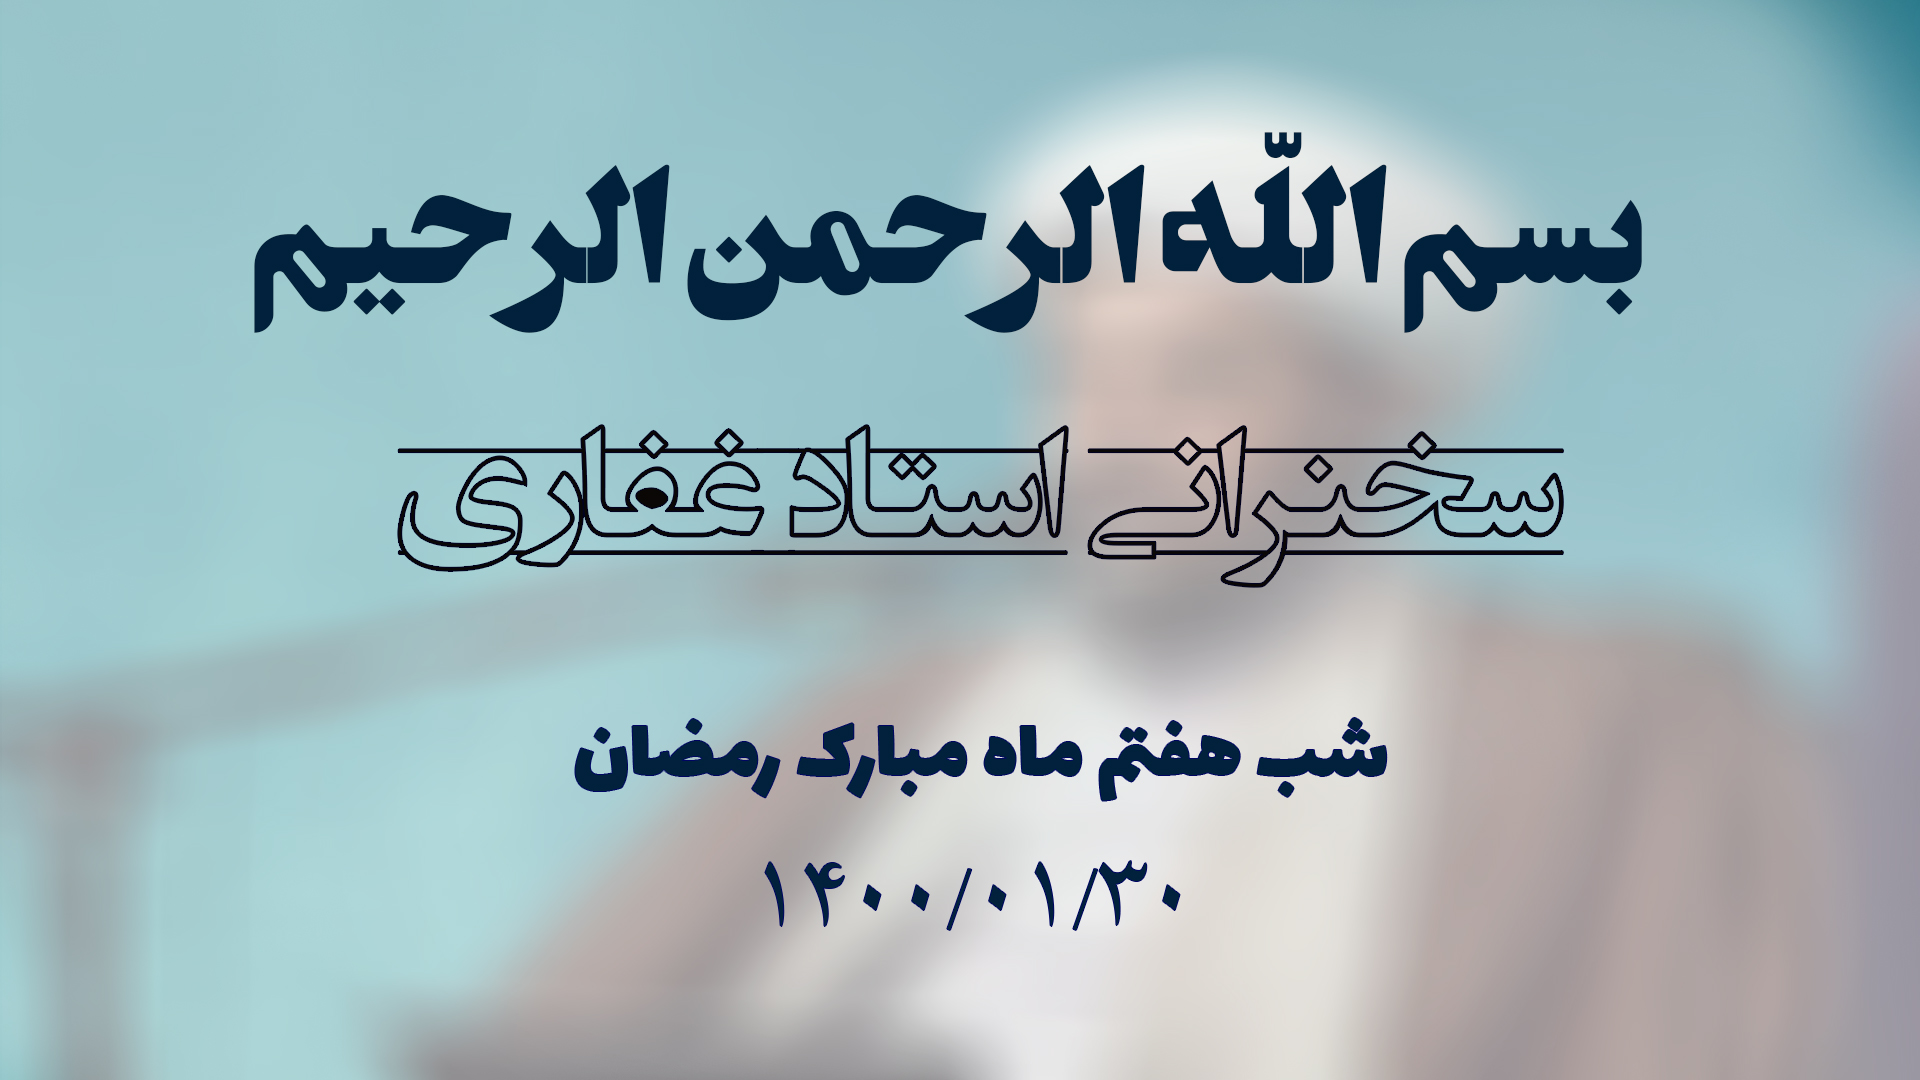 سخنرانی استاد غفاری ، شب هفتم ماه مبارک رمضان 1400/01/30